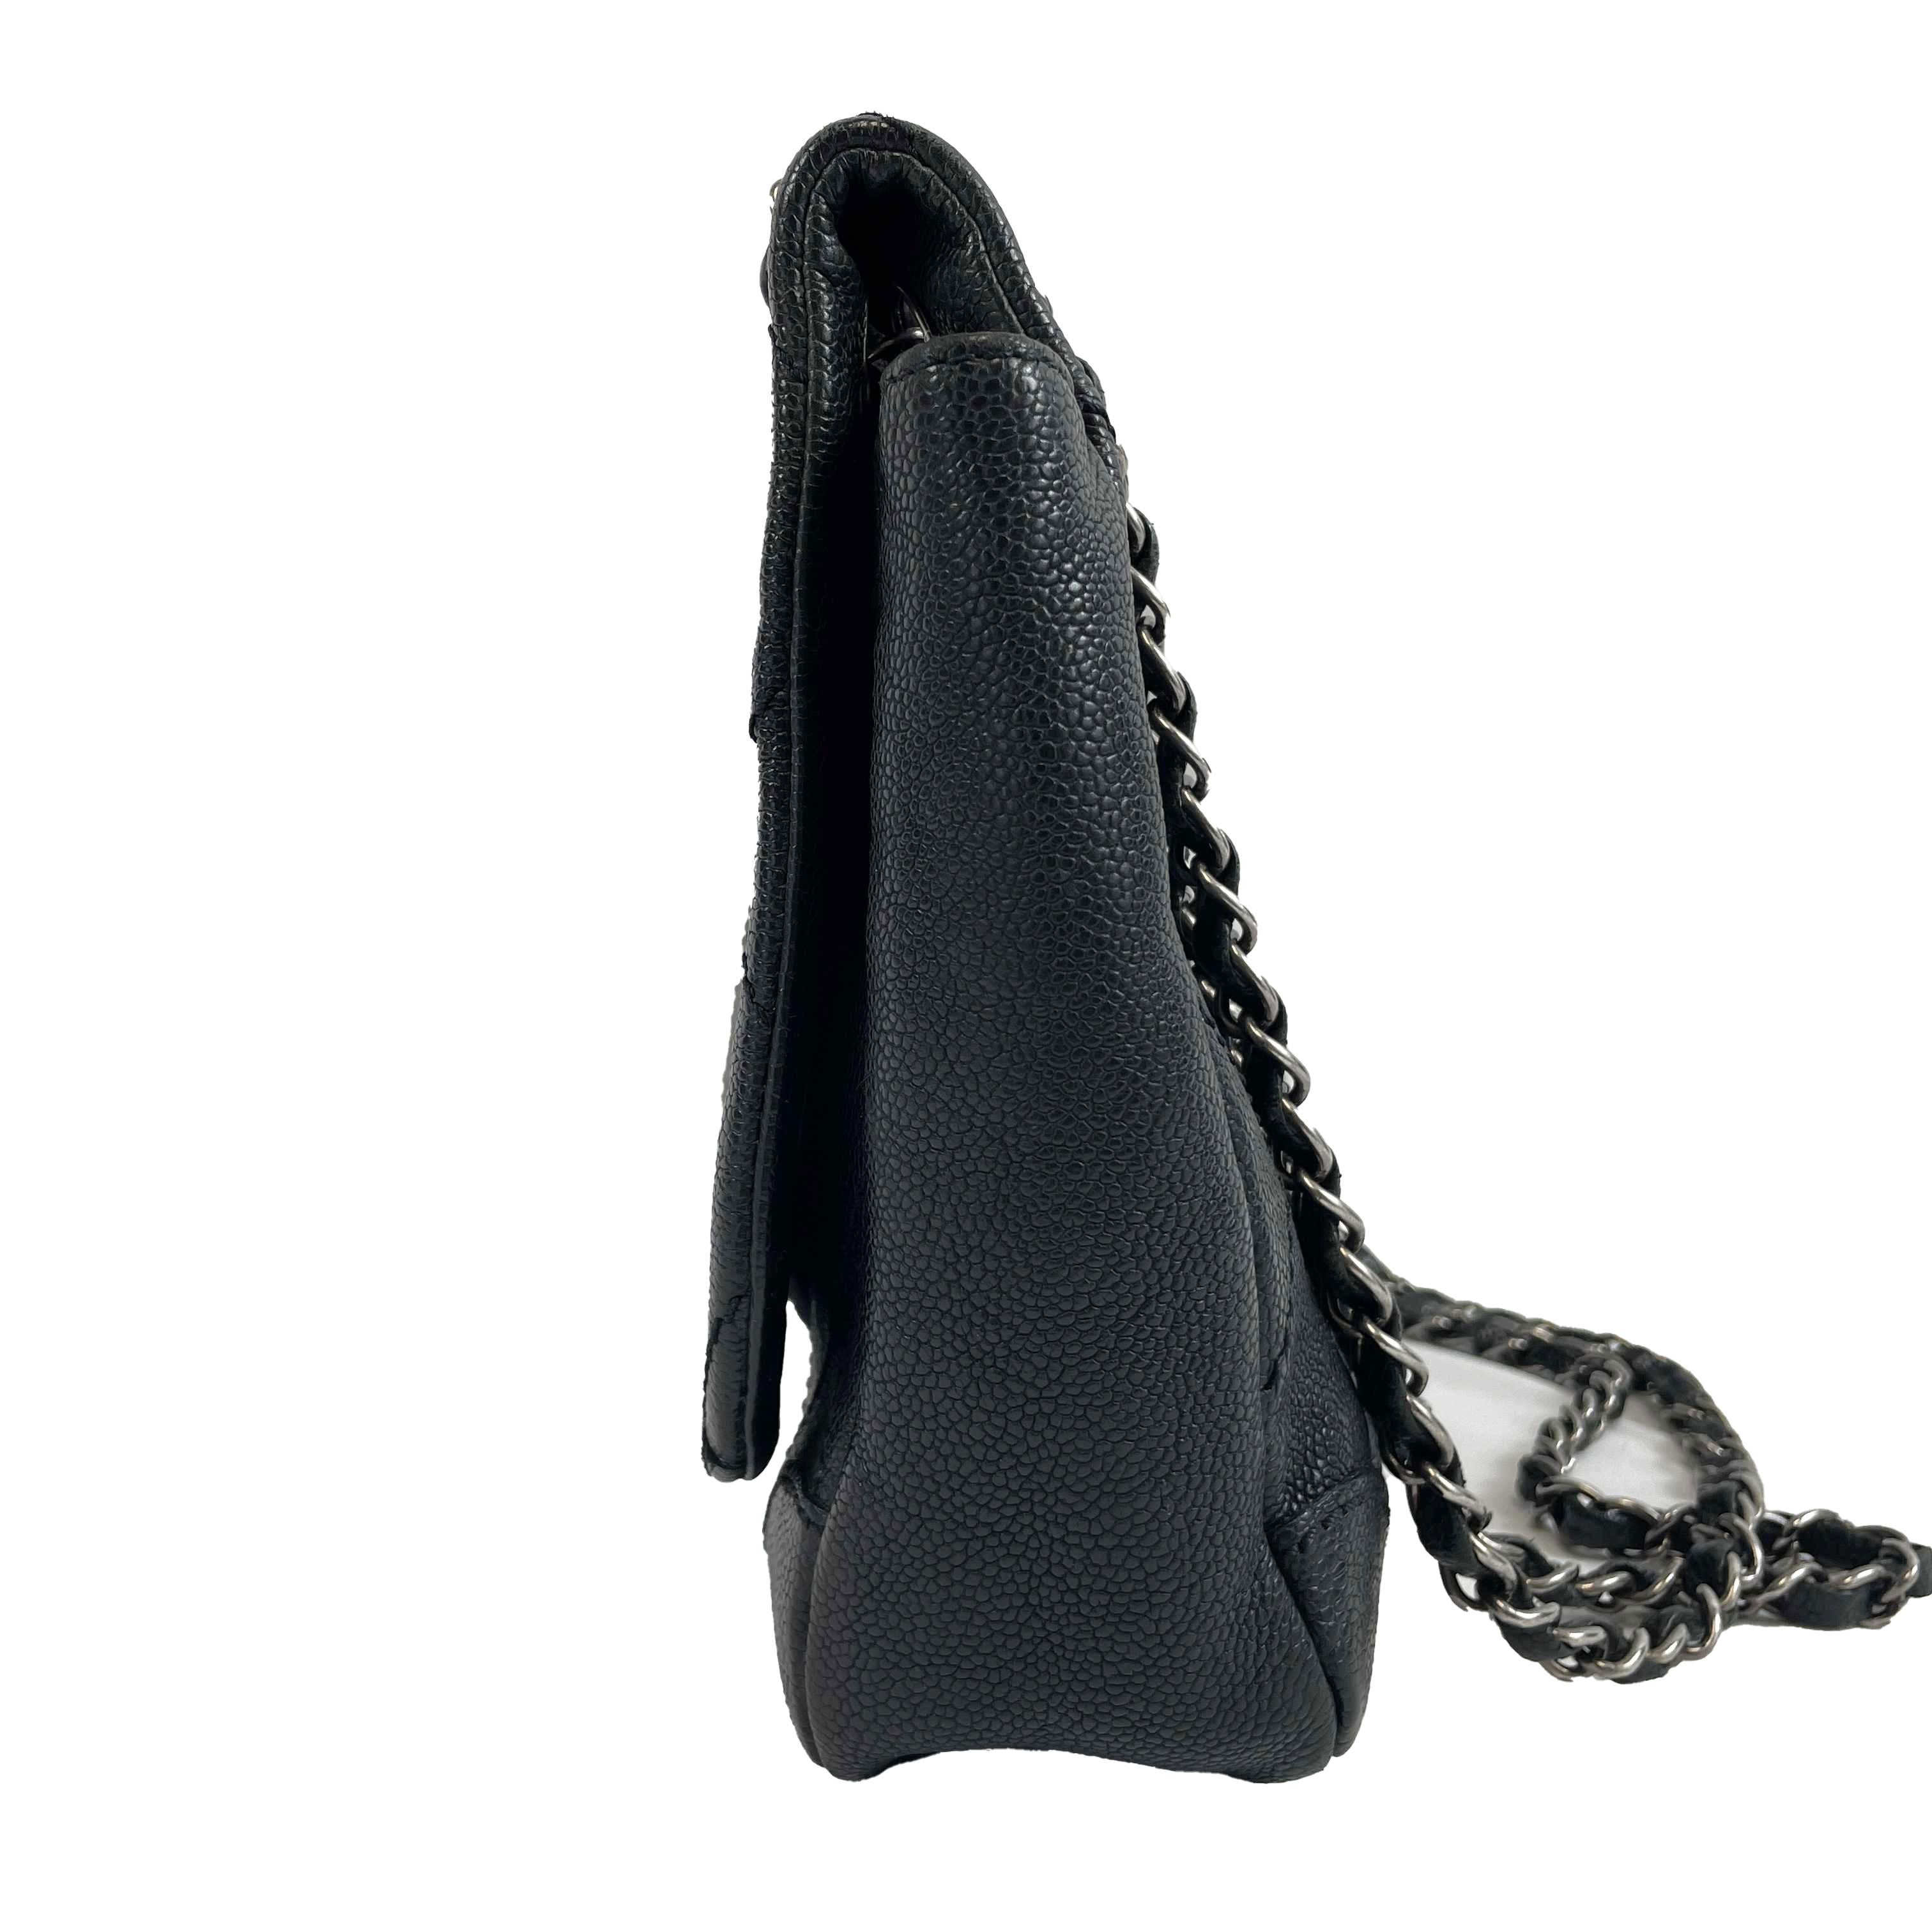 	CHANEL - CC Ligne Flap Large Bag Black / Silver Caviar Leather Shoulder Bag 1